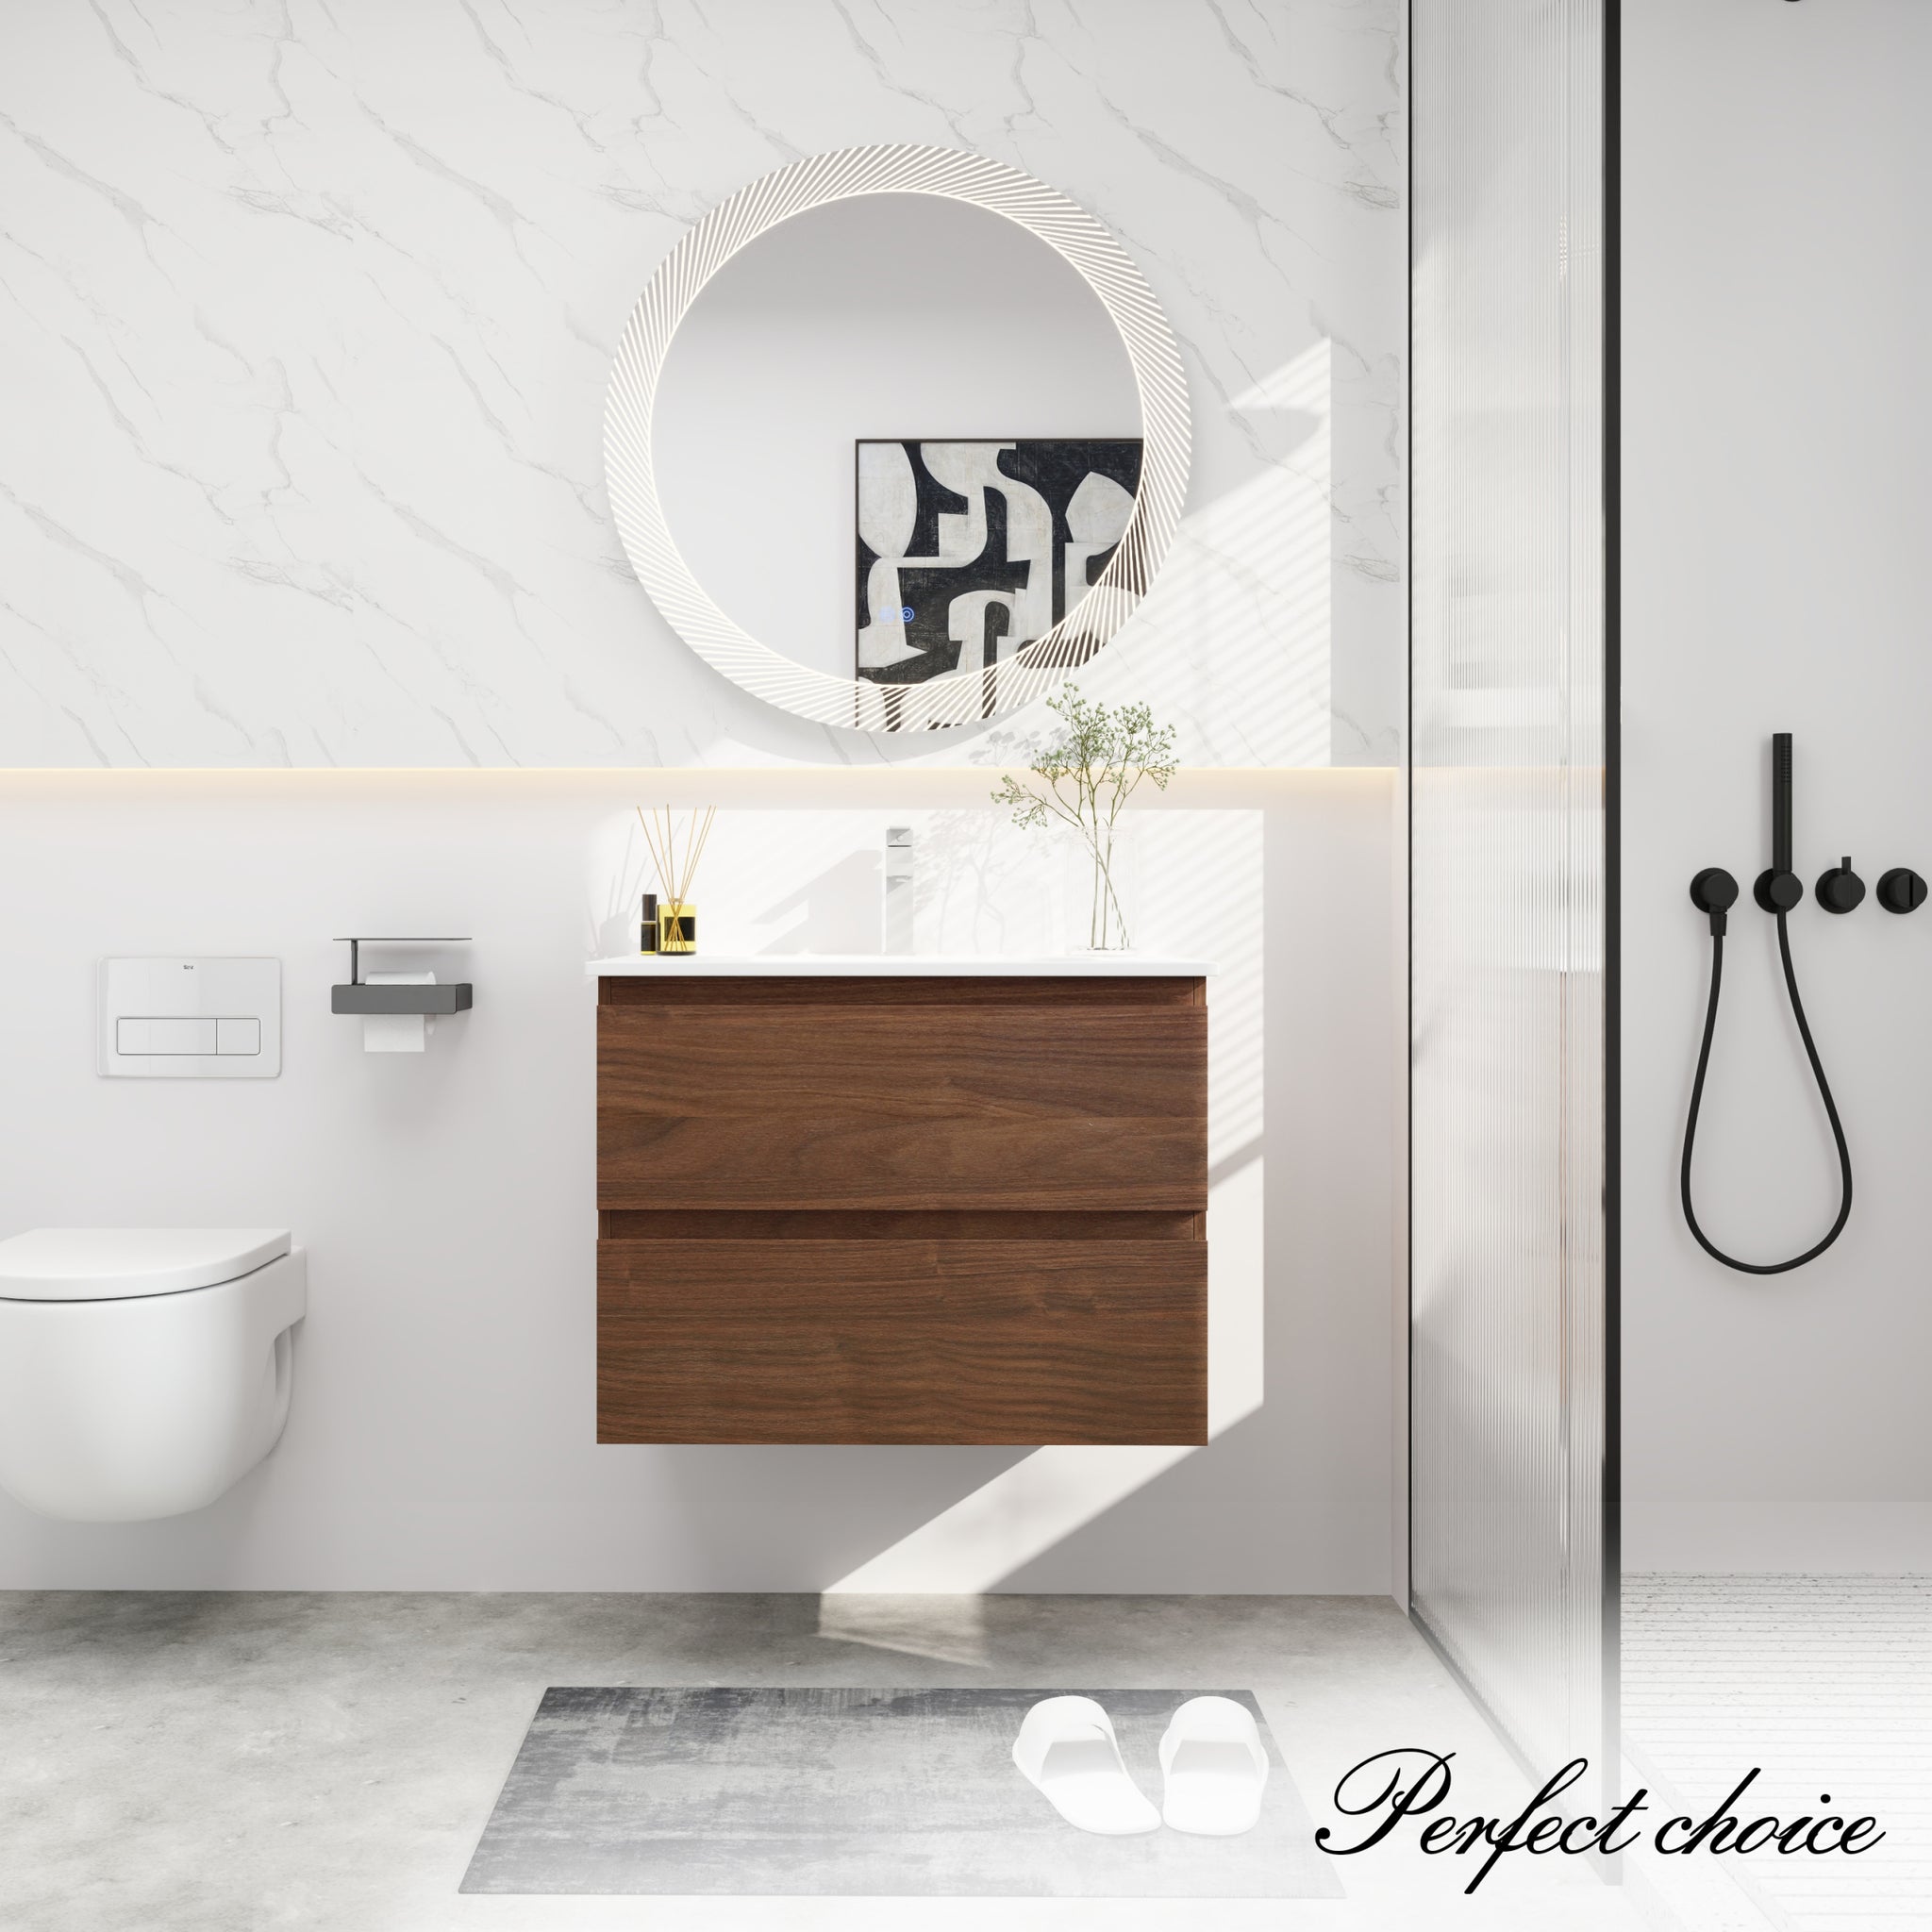 30" Bathroom Vanity With Gel Basin Top, Soft Close brown oak-plywood